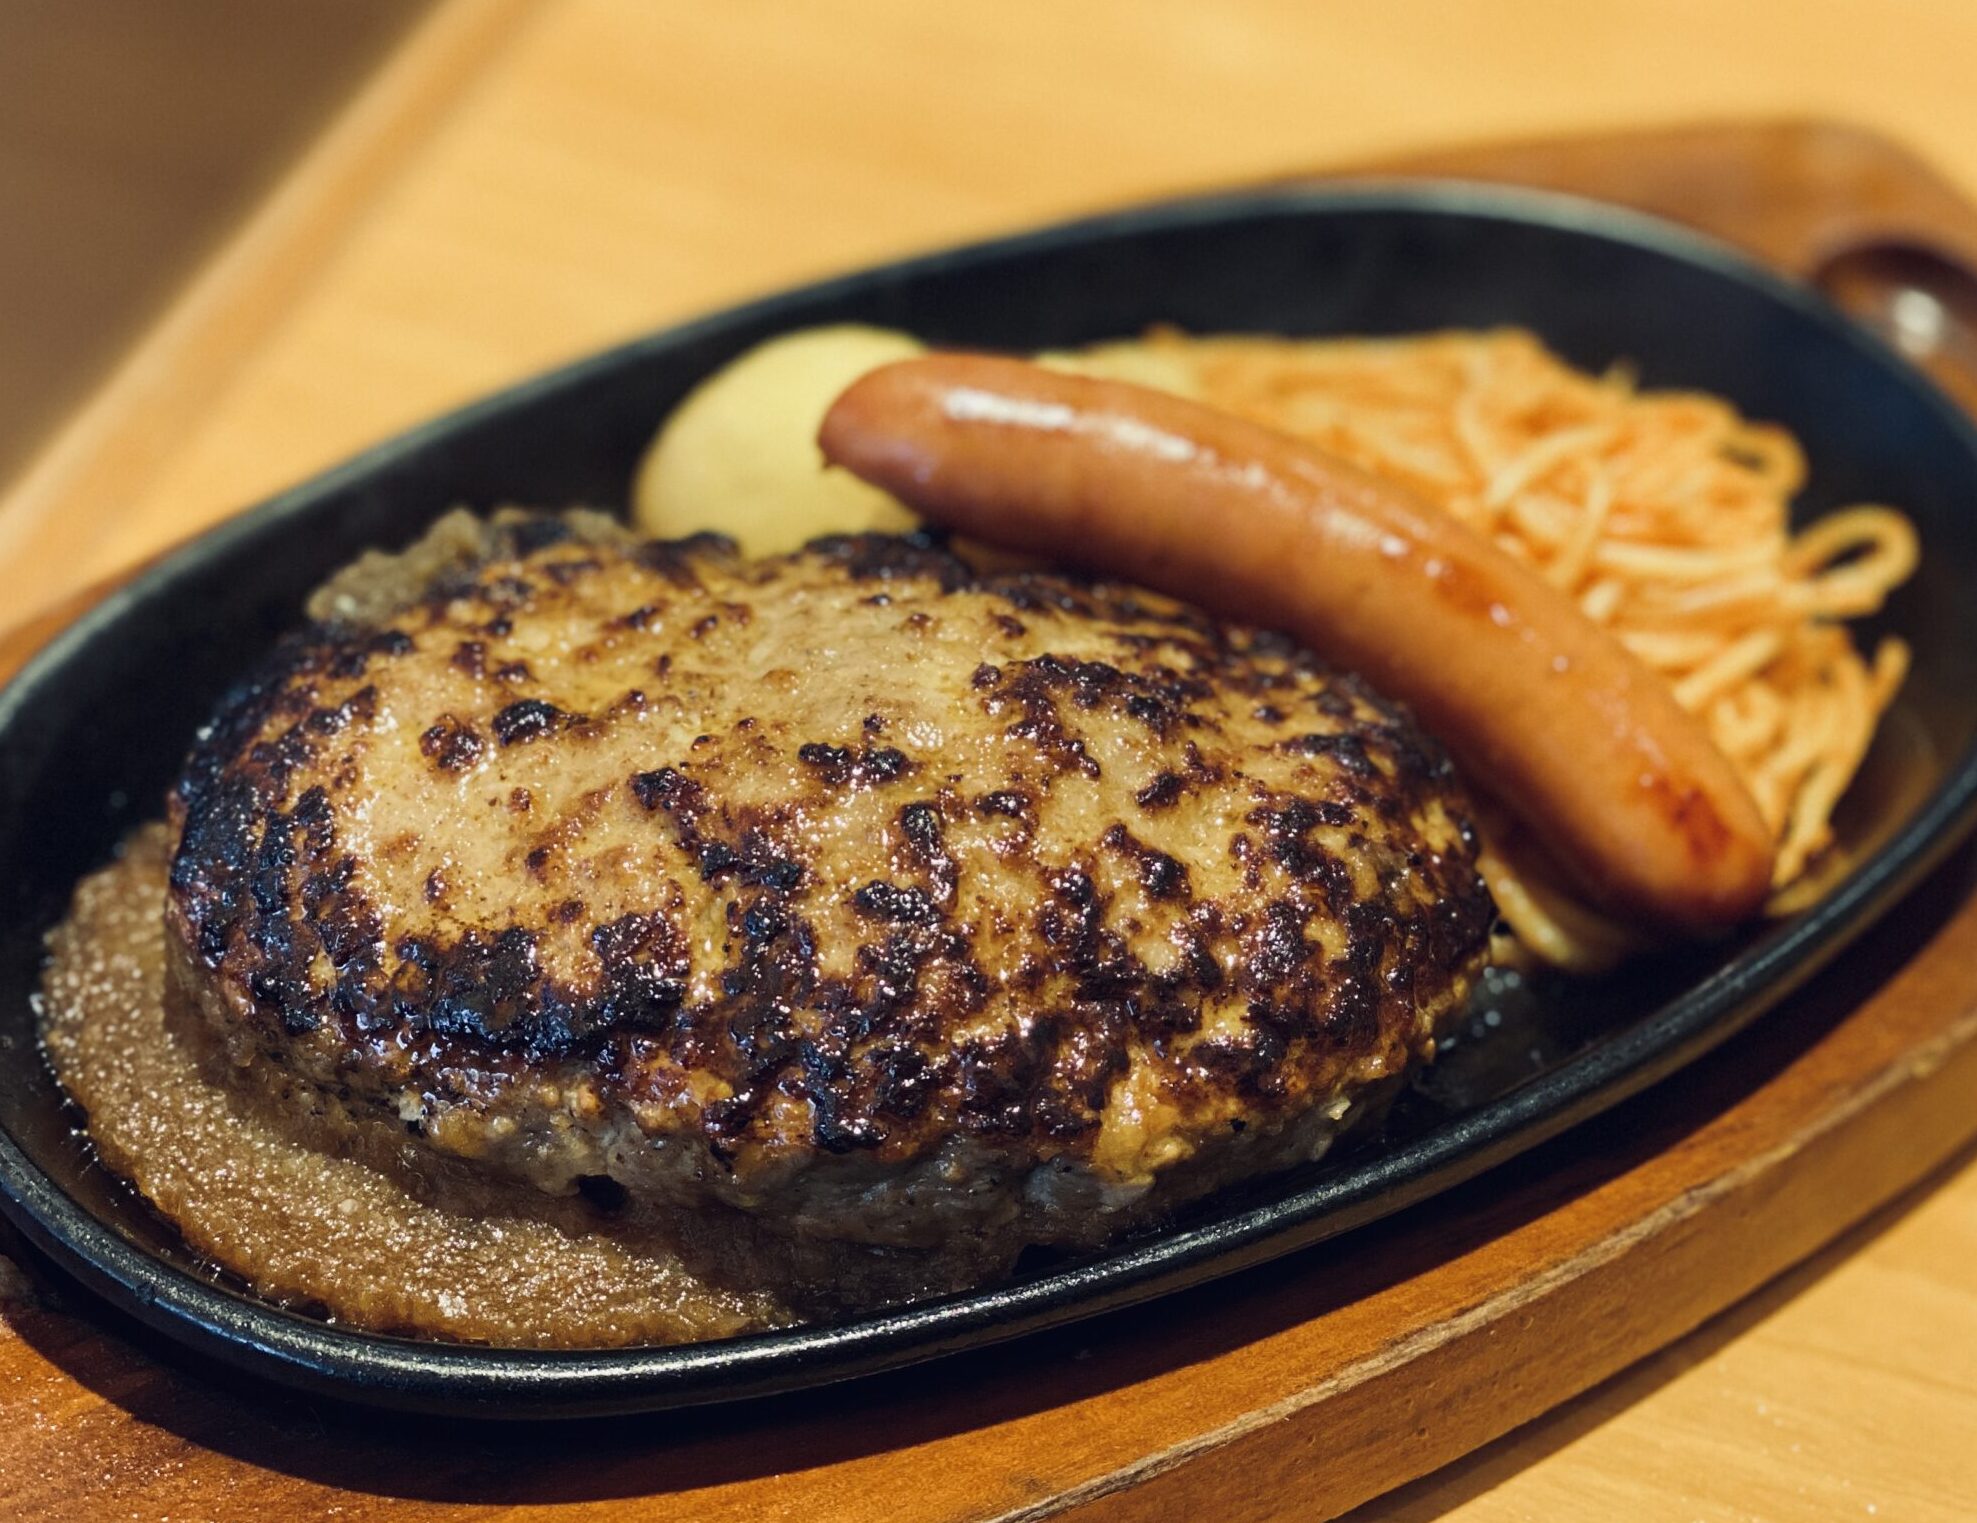 上田市 ステーキ宮 上田店 肉肉しいハンバーグ 食べプロあらら のおすすめランチ 長野